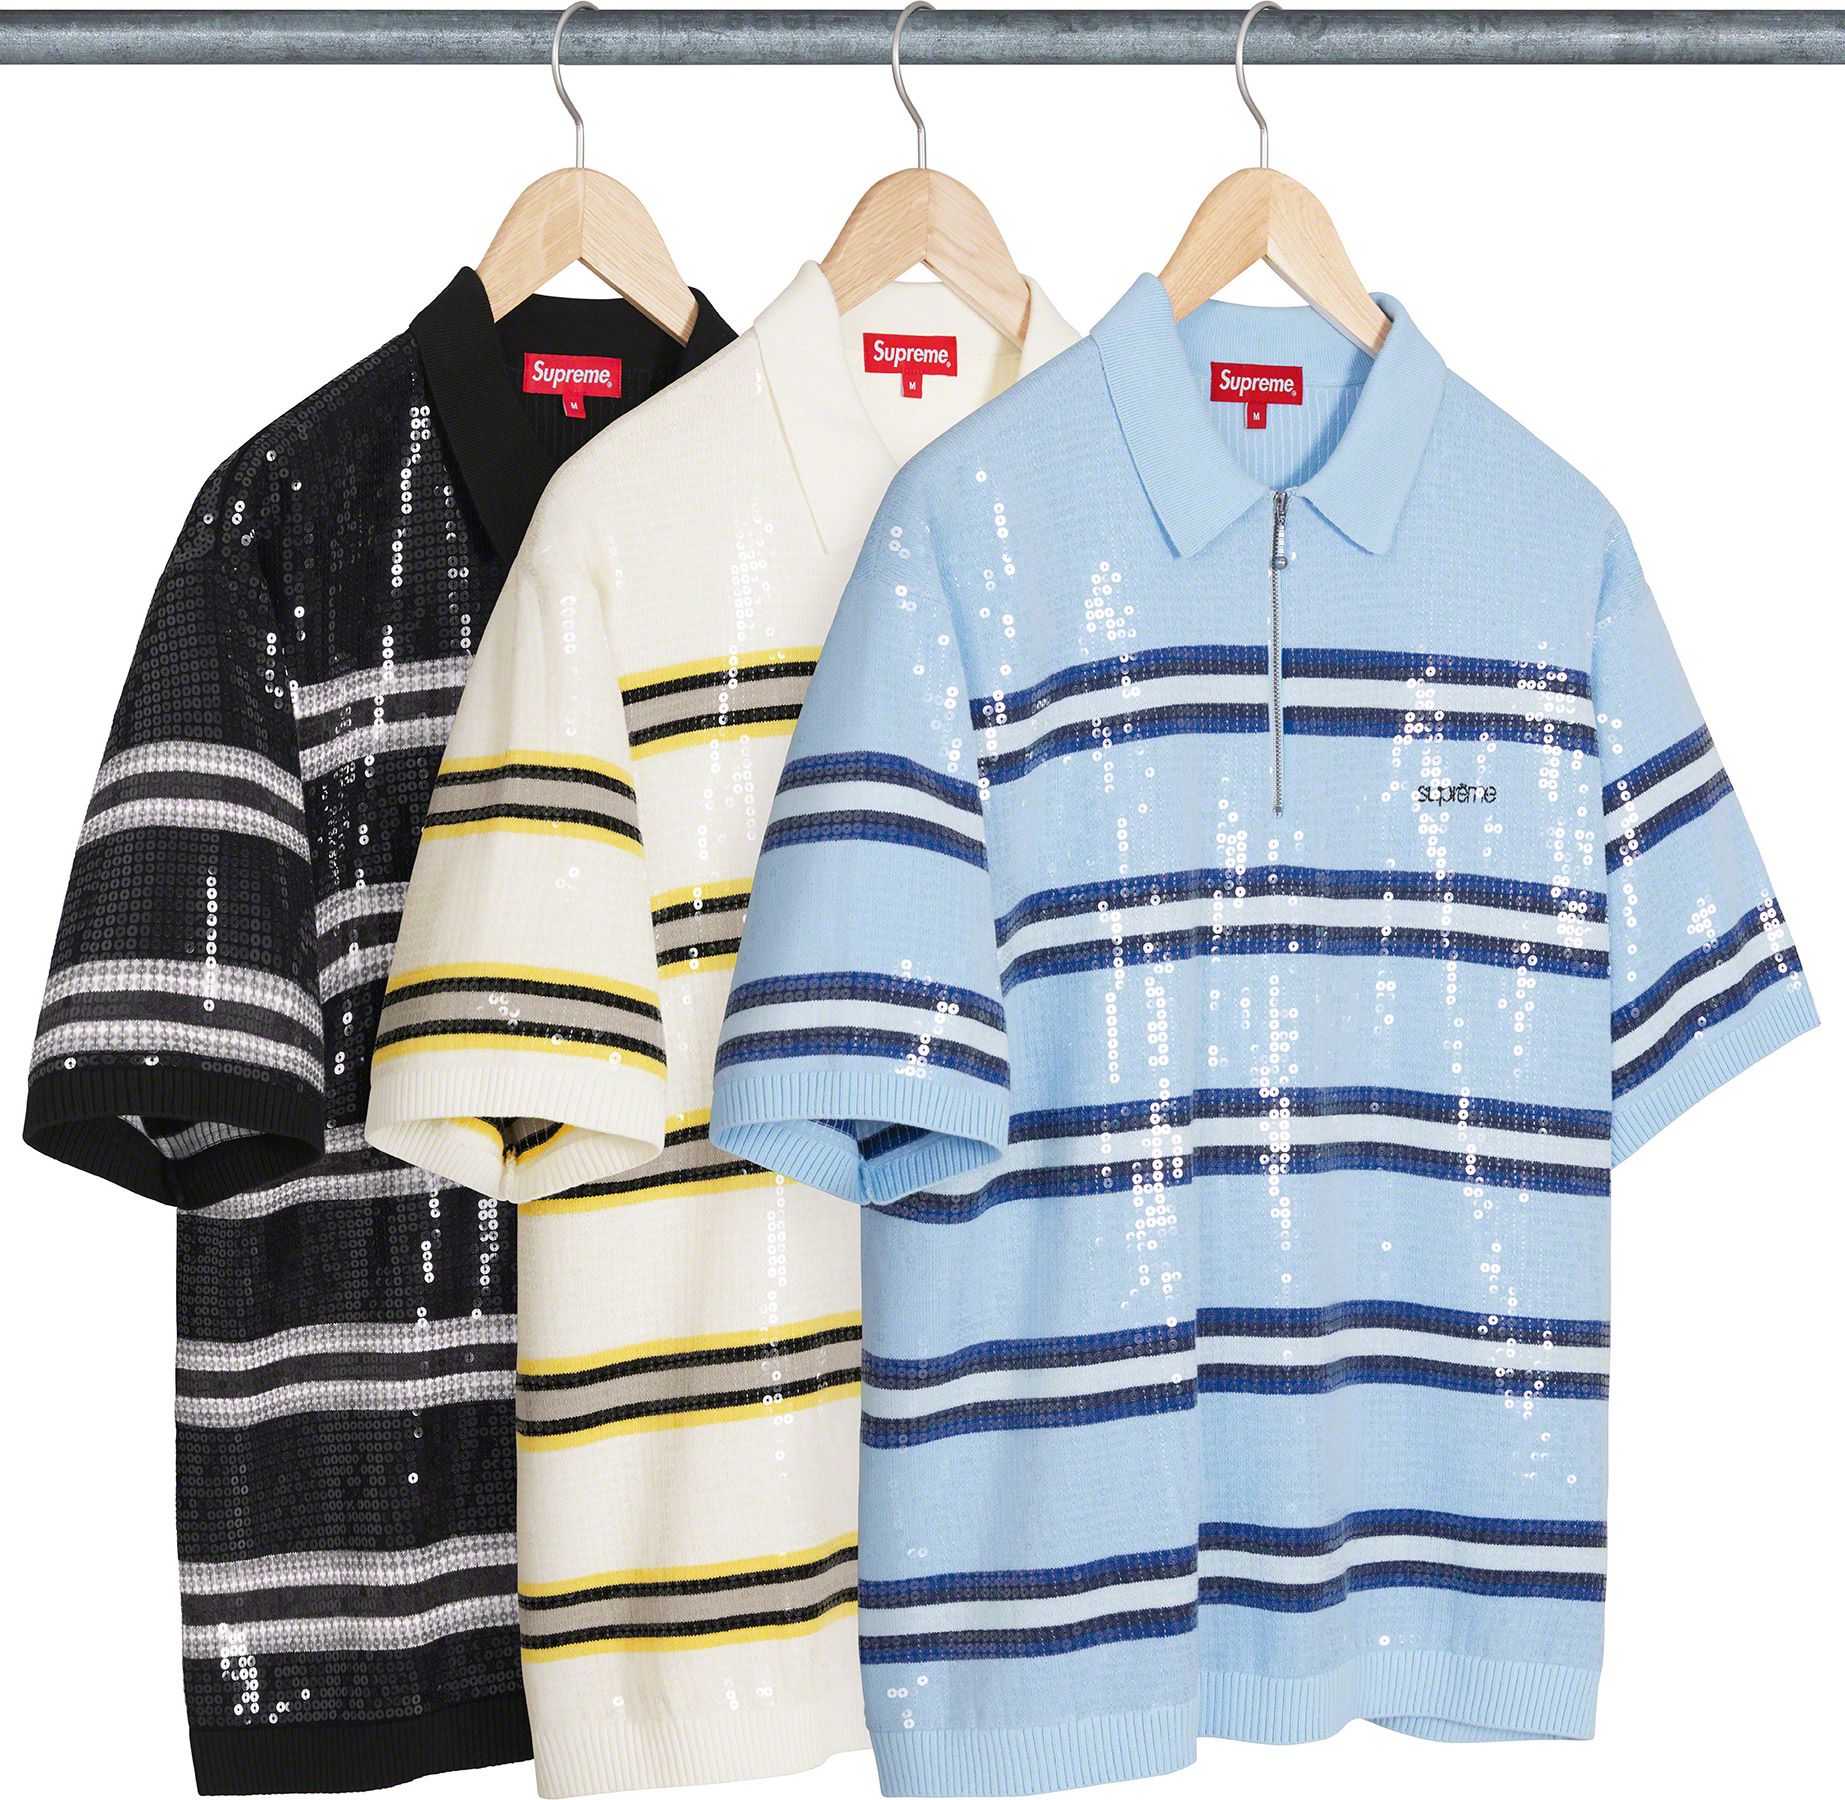 8,160円SUPREME Striped racingwork shirts Size S